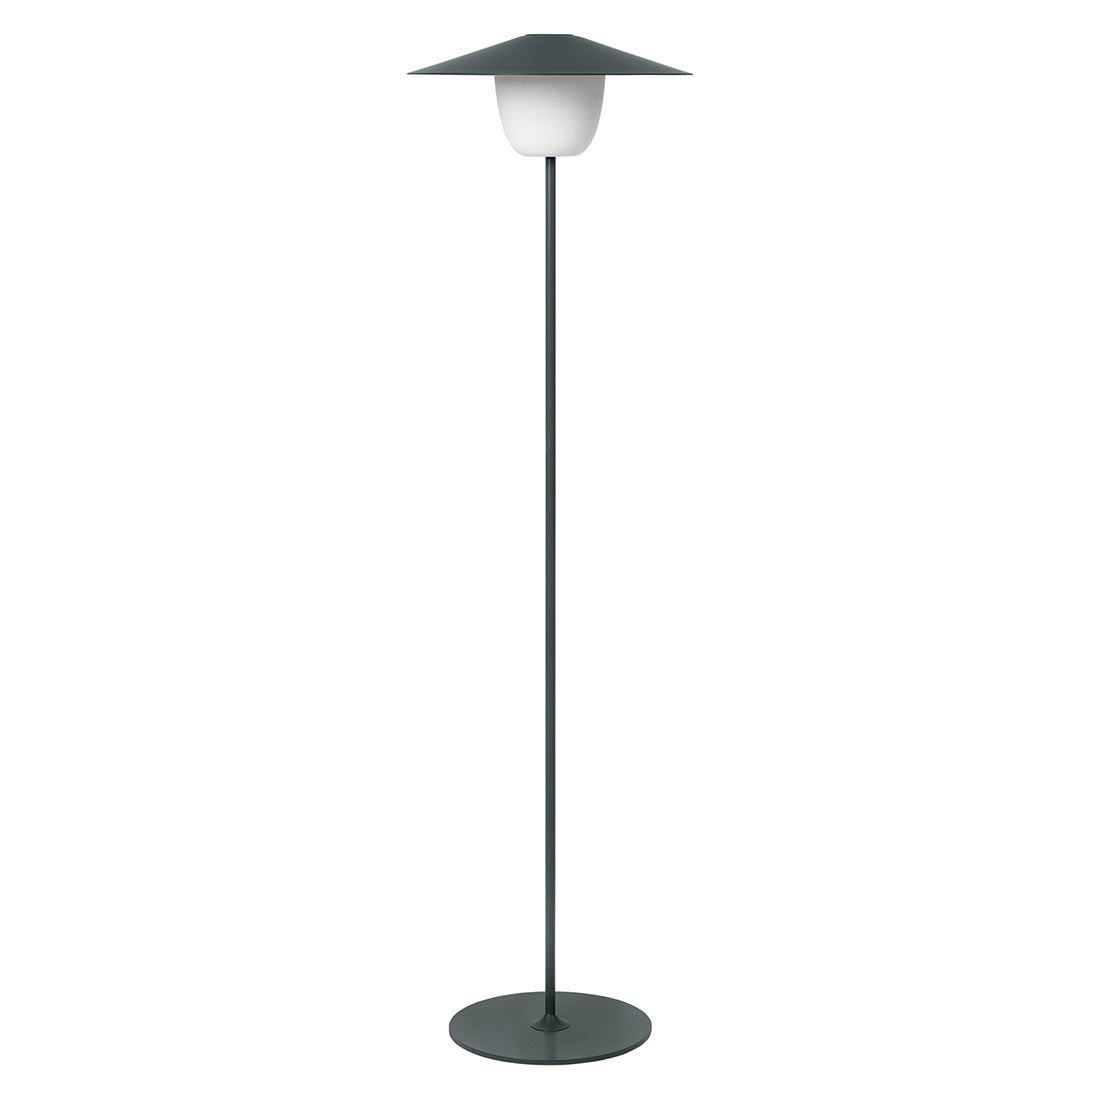 Blomus Ani Lamp Floor Mobile LED-Leuchte Aluminium